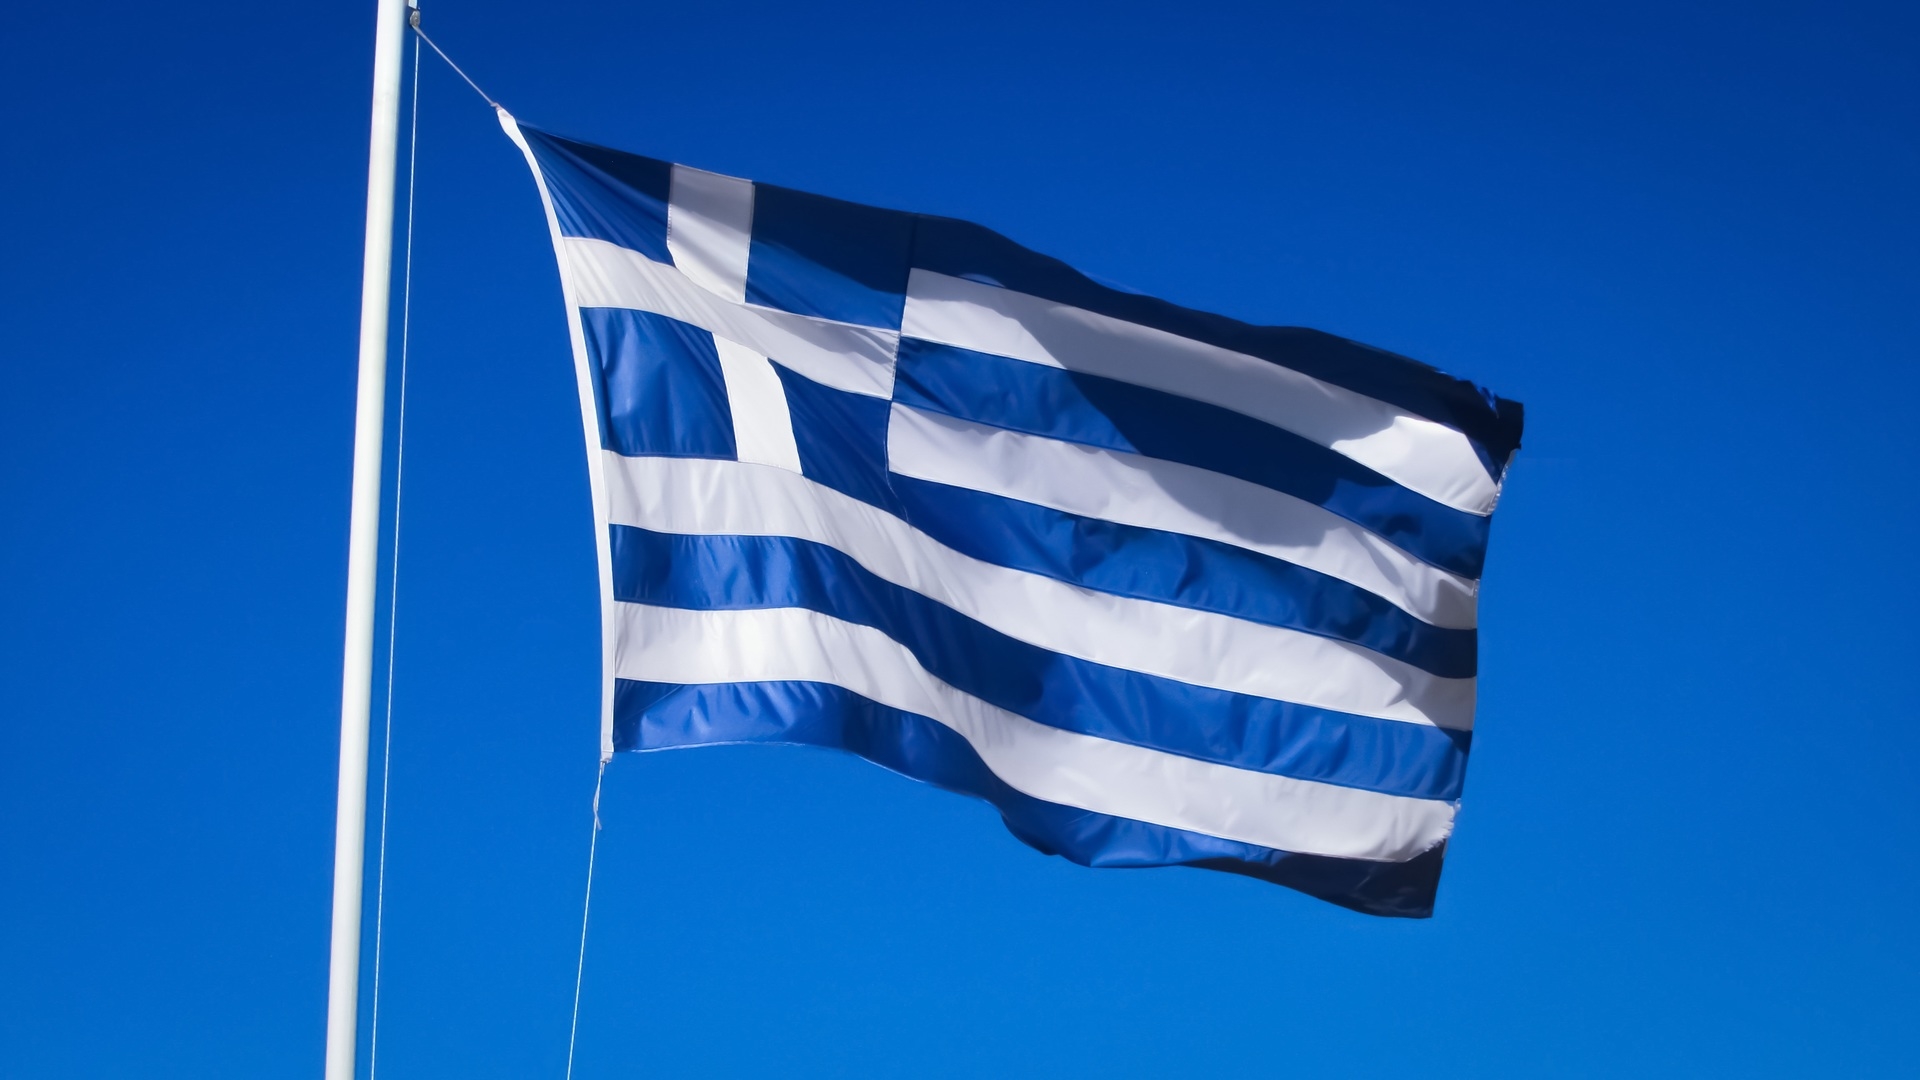 Le drapeau de la Grèce | pxhere.com CC-BY-SA-2.0